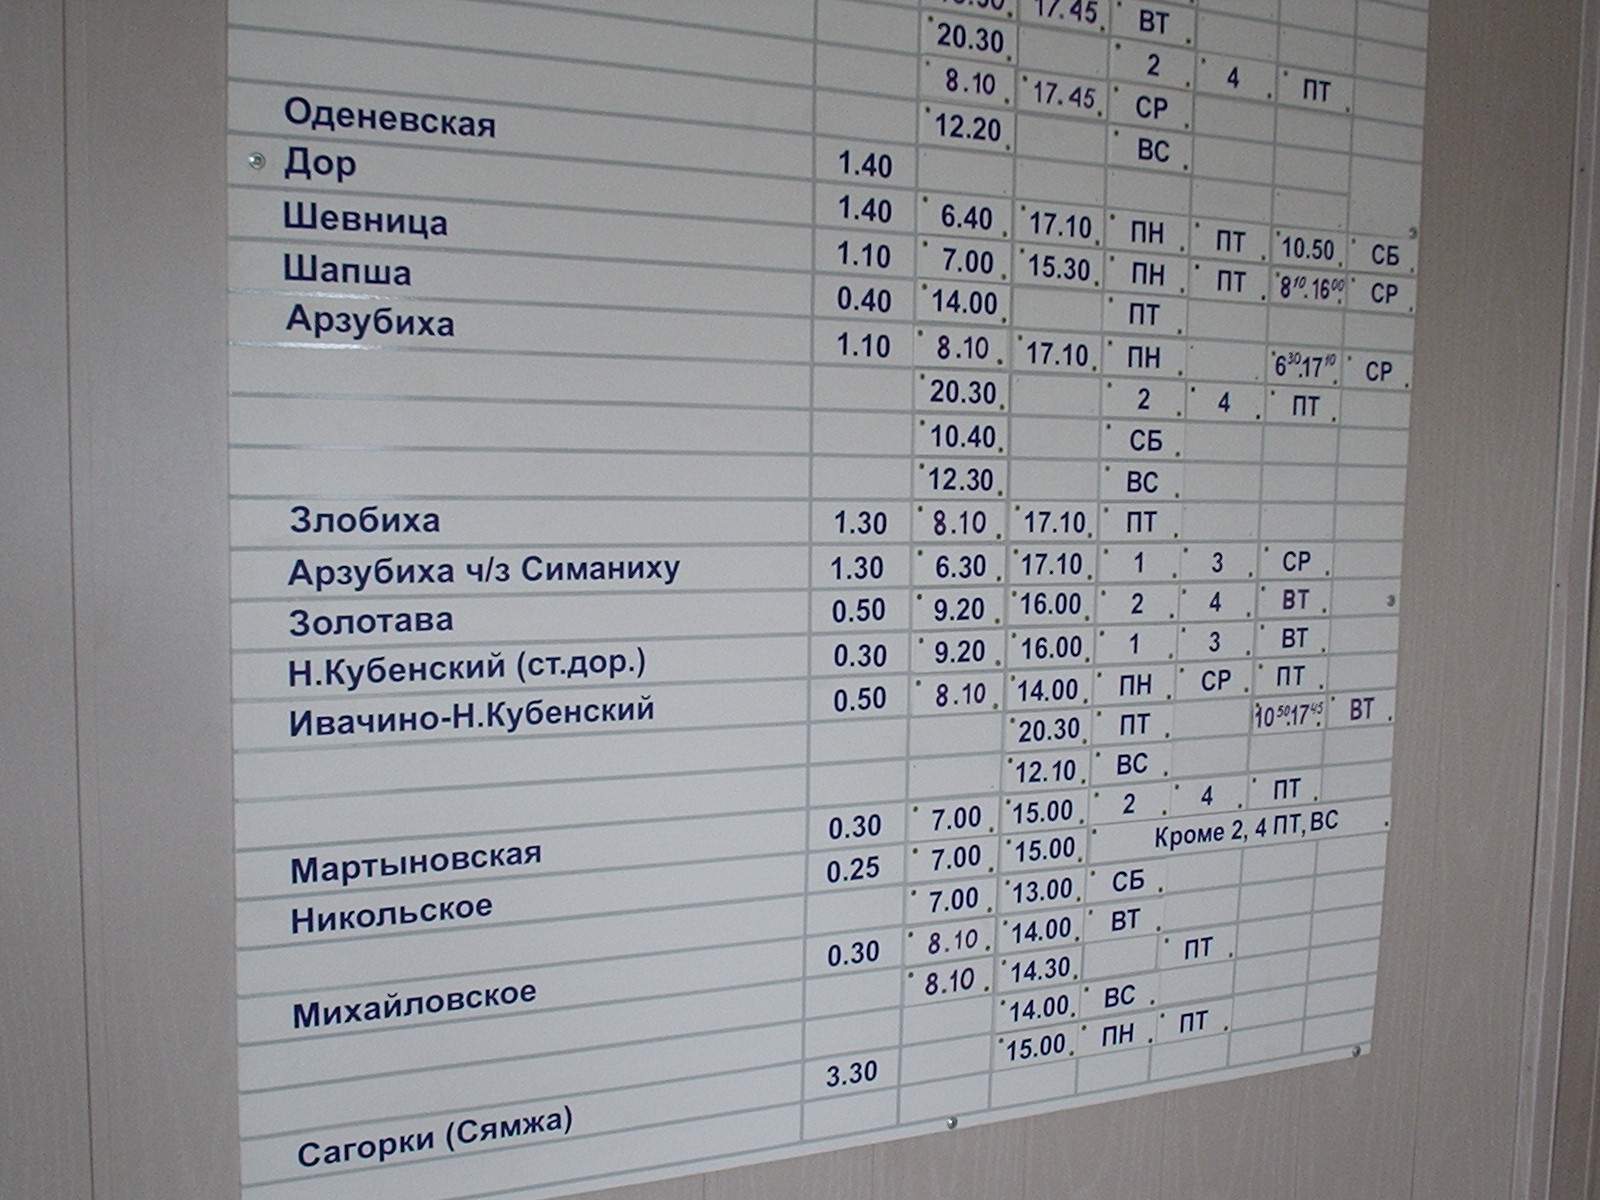 Расписание автобусов на смоленском автовокзале